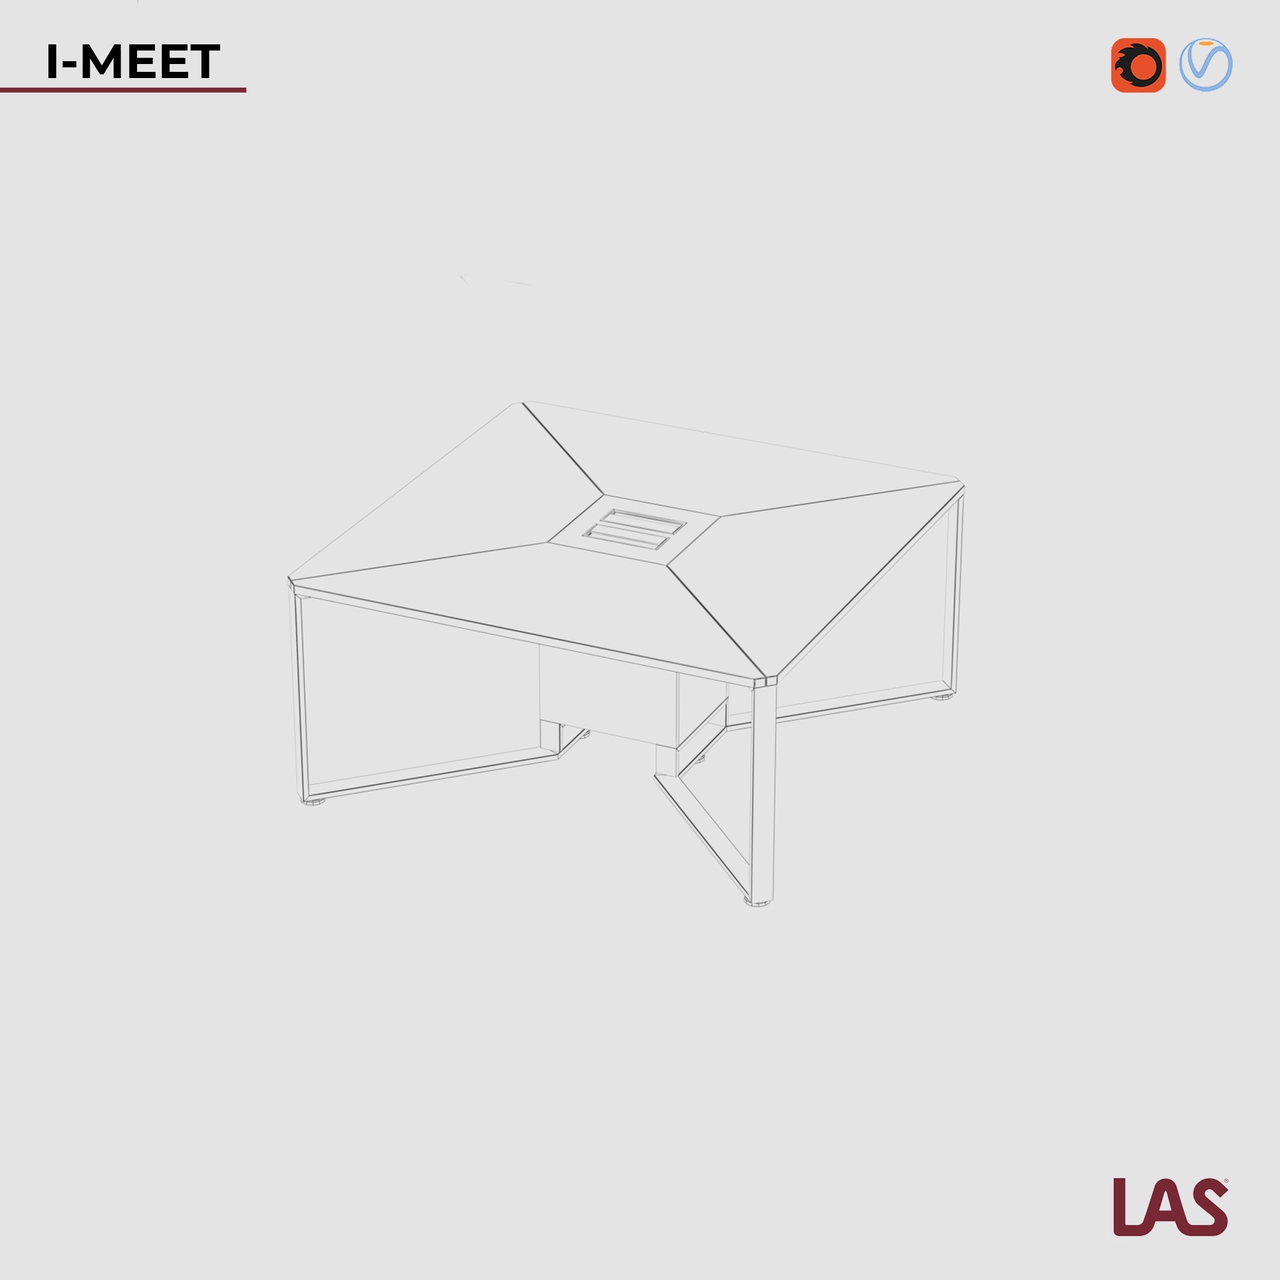 Превью G 3D-модели квадратного переговорного стола на 8 человек LAS I-Meet 146648